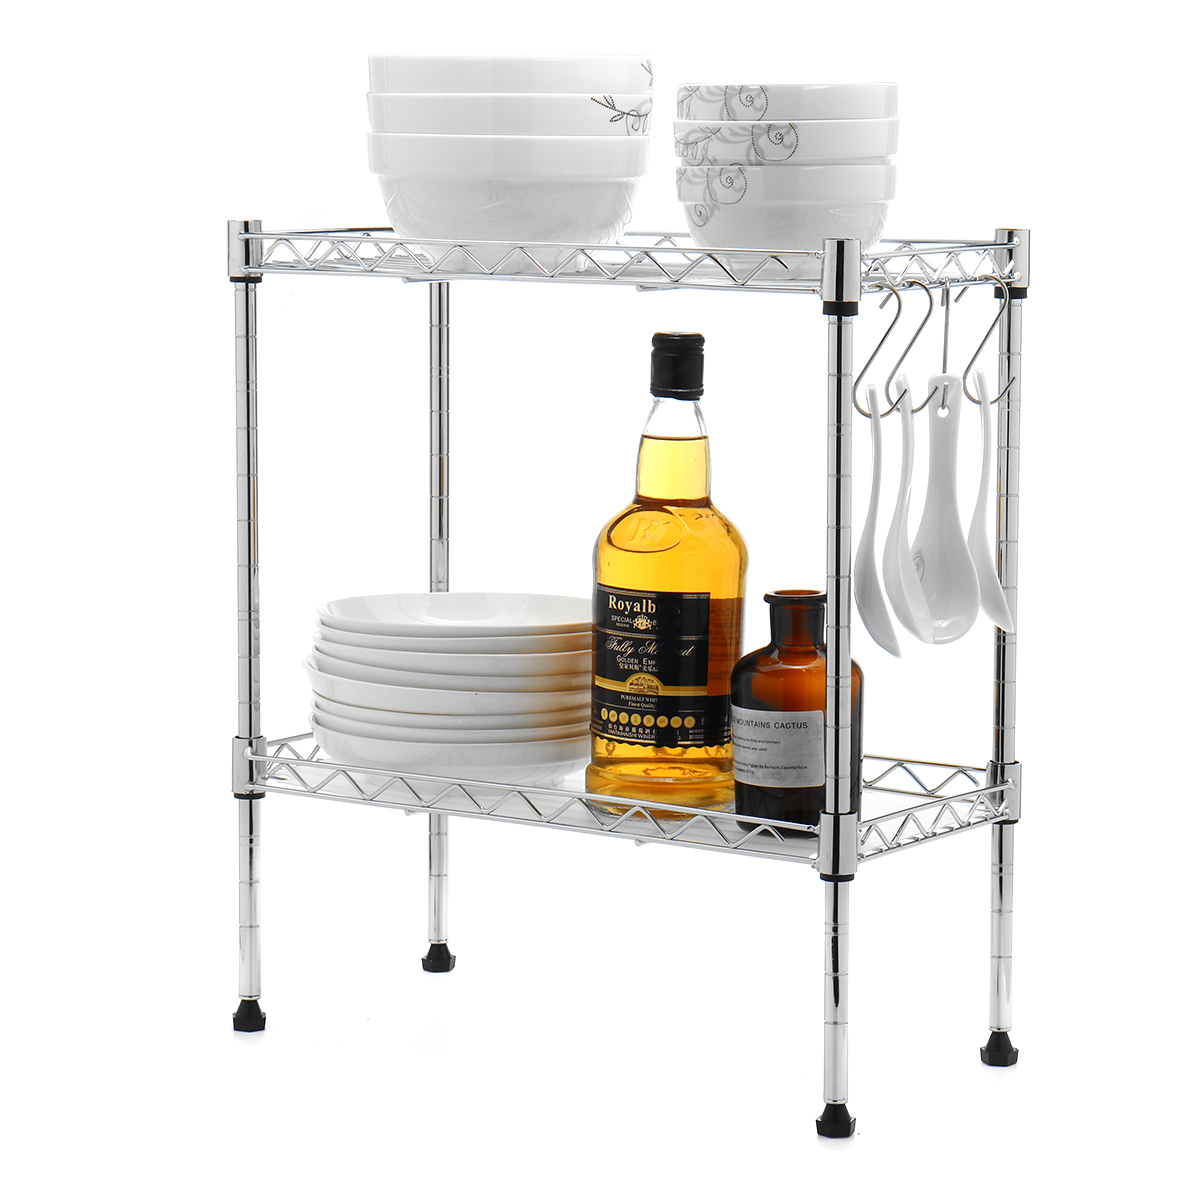 2/3 Layers Kitchen Organizer Shelf Carbon Steel Adjustable Kitchen Storage Baskets Kitchen Organizer Dish Rack Holder—8